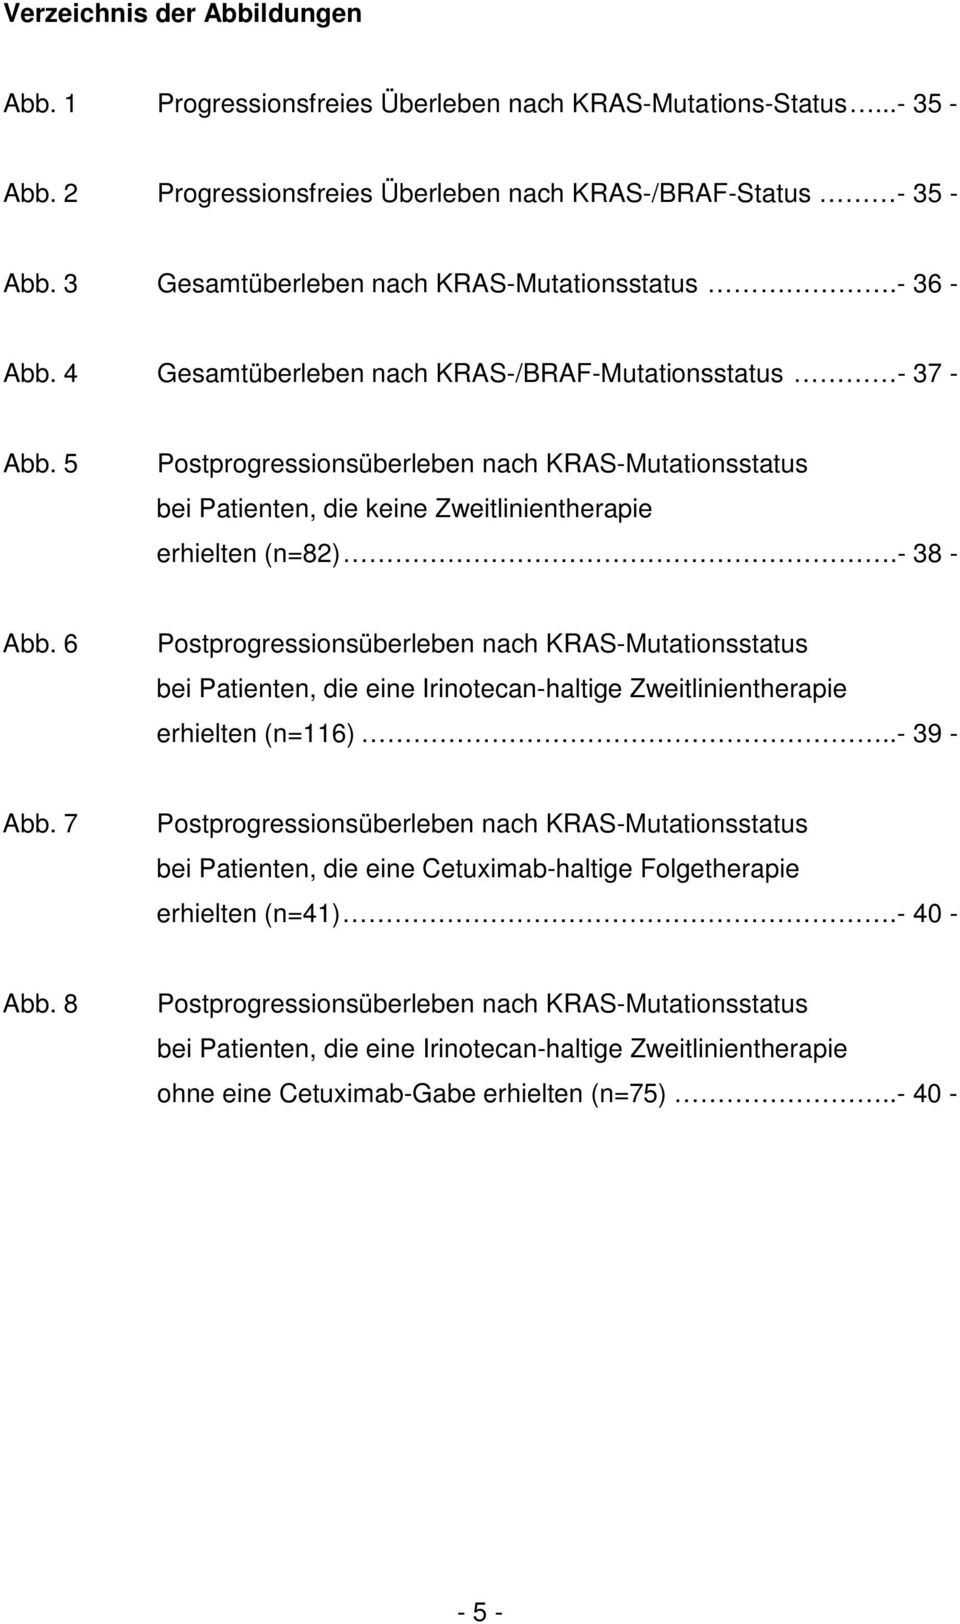 5 Postprogressionsüberleben nach KRAS-Mutationsstatus bei Patienten, die keine Zweitlinientherapie erhielten (n=82).- 38 - Abb.